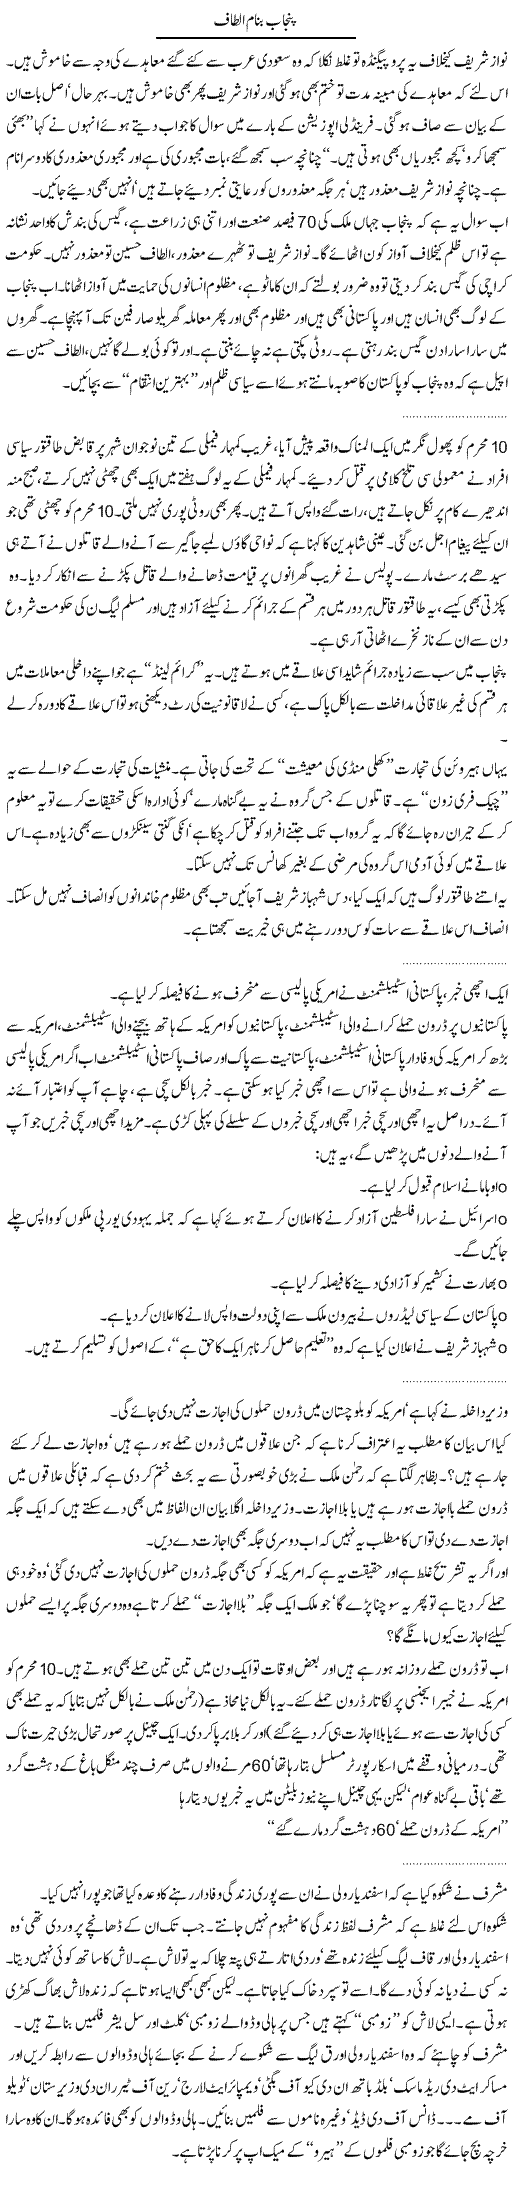 Punjab Altaf Express Column Abdullah Tariq 21 December 2010